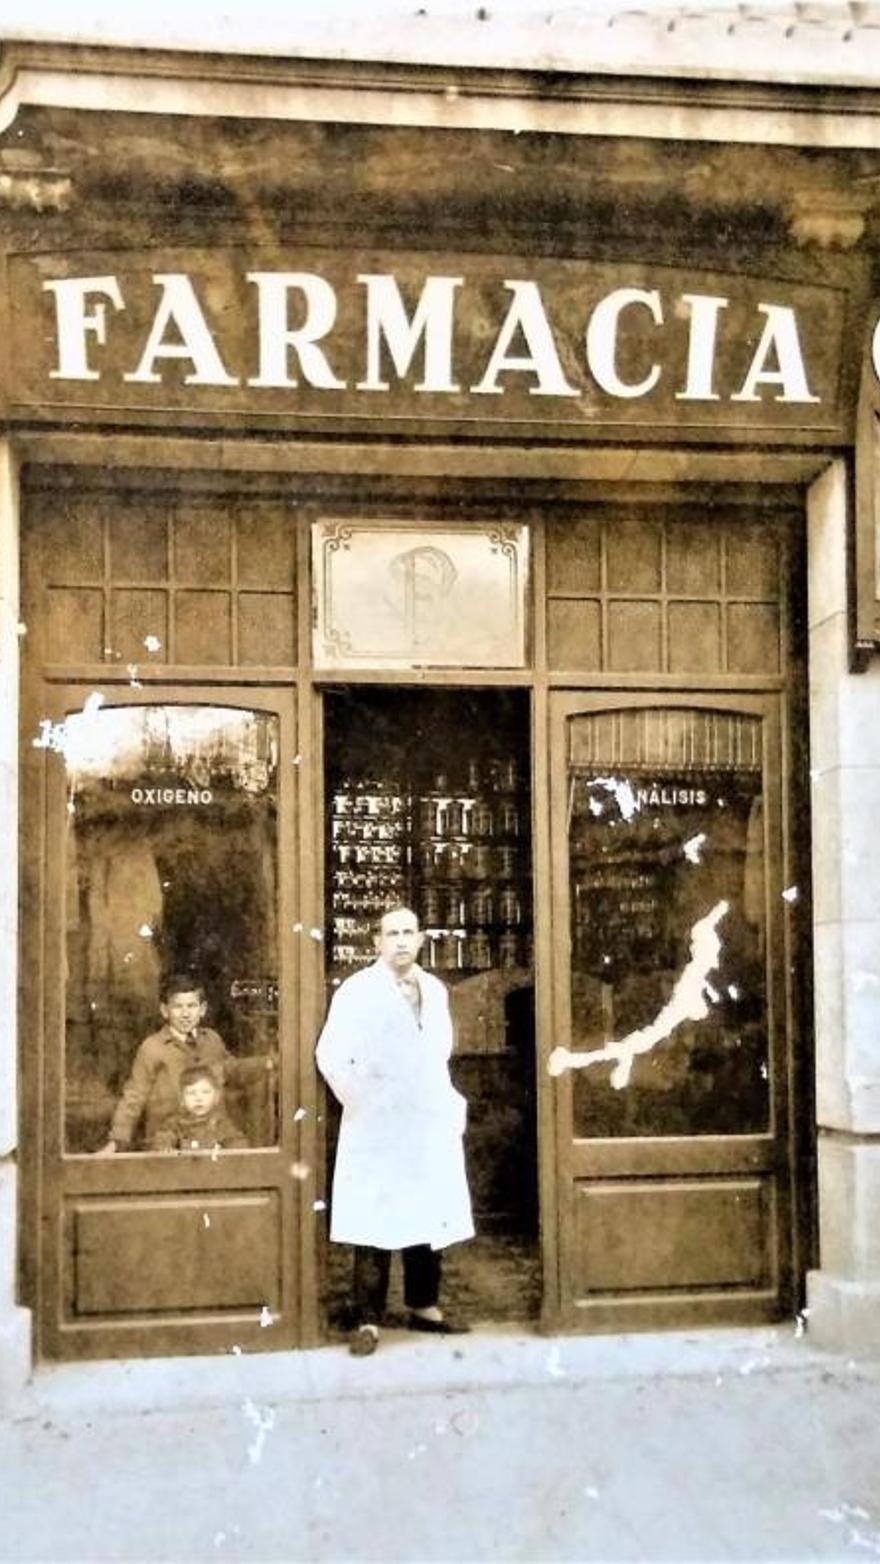 Imagen antigua de una farmacia.